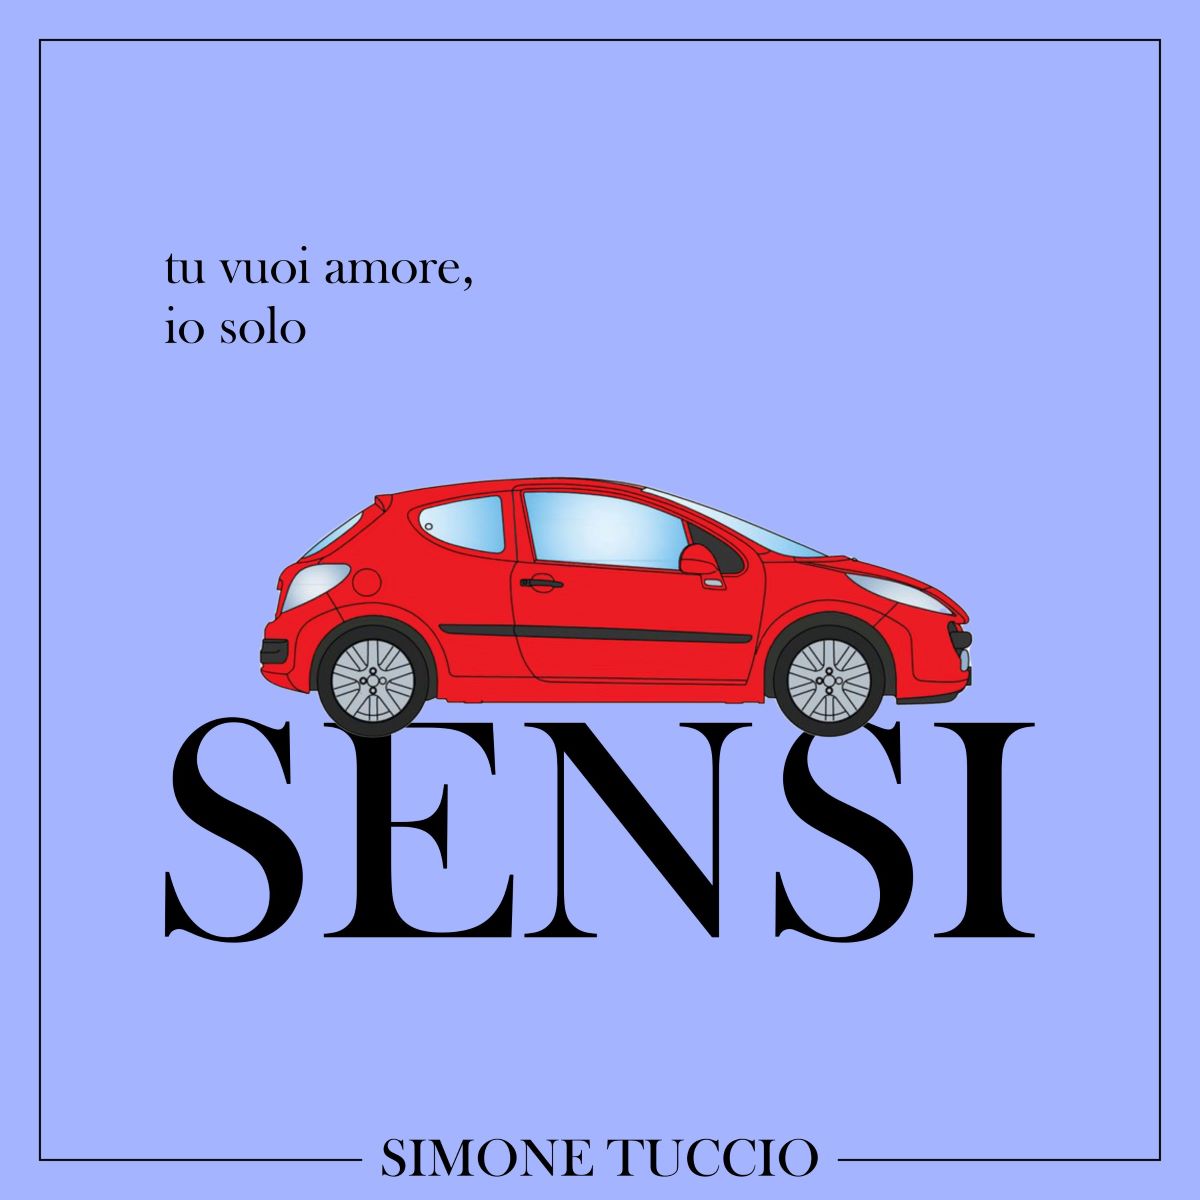 Simone Tuccio - Il nuovo singolo “Sensi”